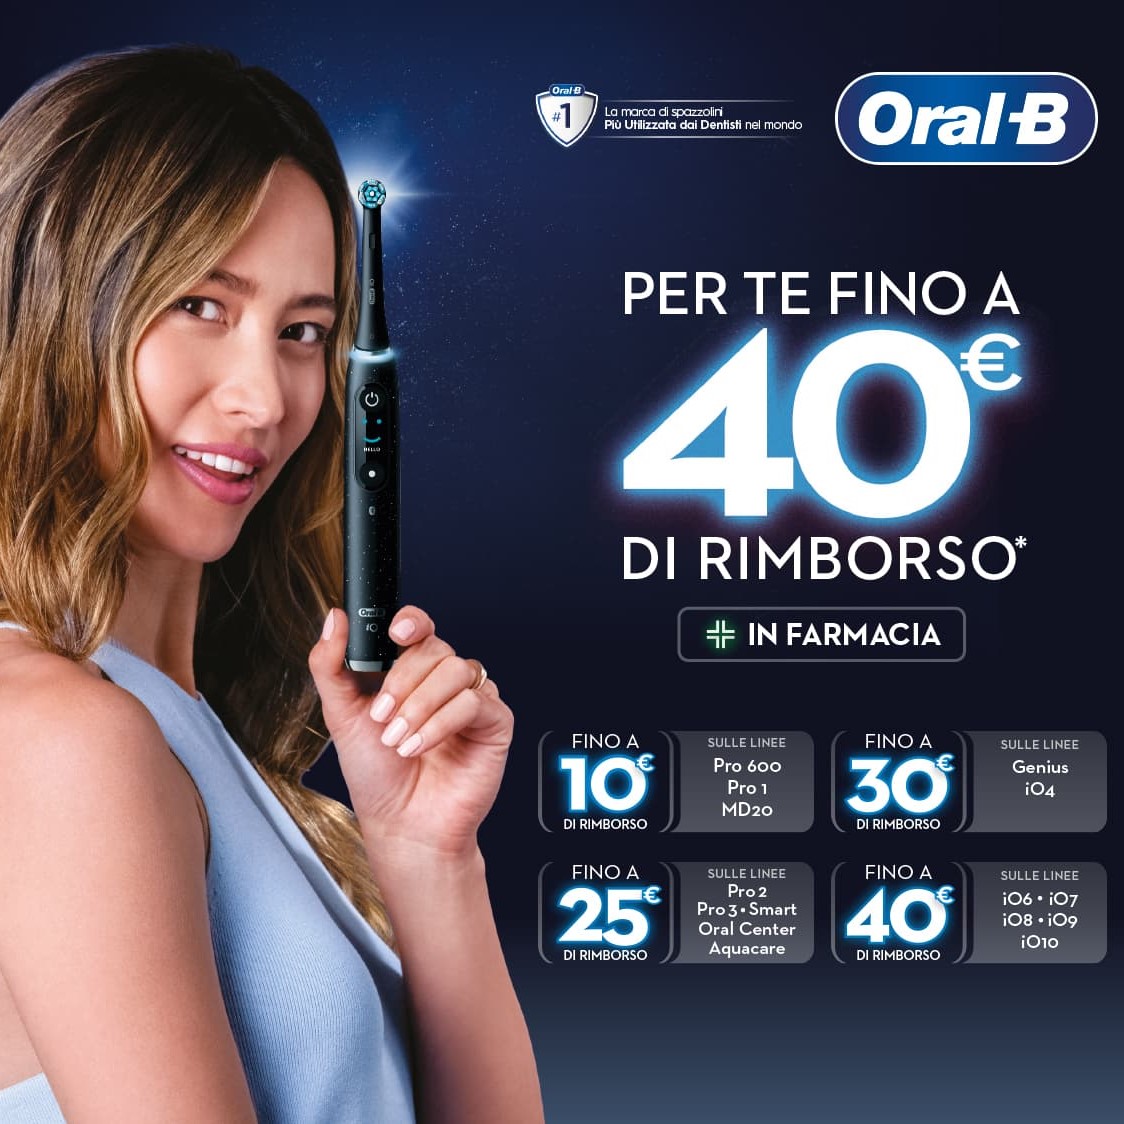 Acquista Oral-B, per te un rimborso fino a 40€!